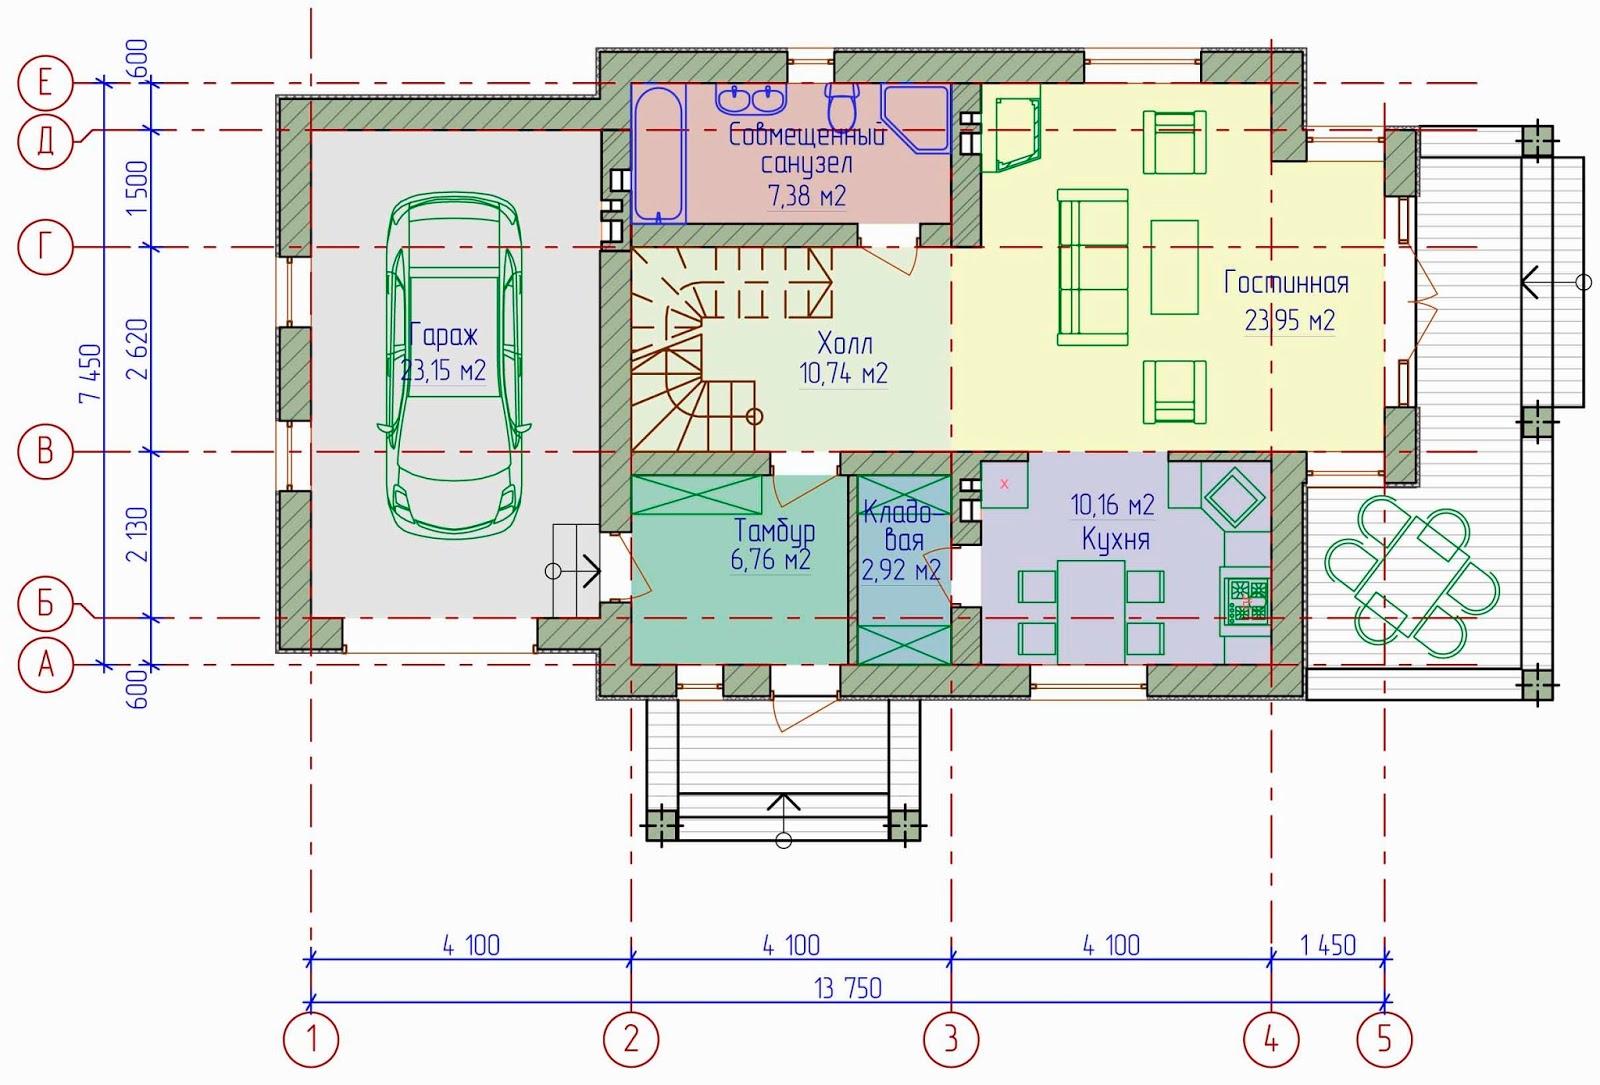 Планы этажей частного дома. План коттеджа. Планировка коттеджа. План одноэтажного коттеджа. Проект коттеджа с размерами.